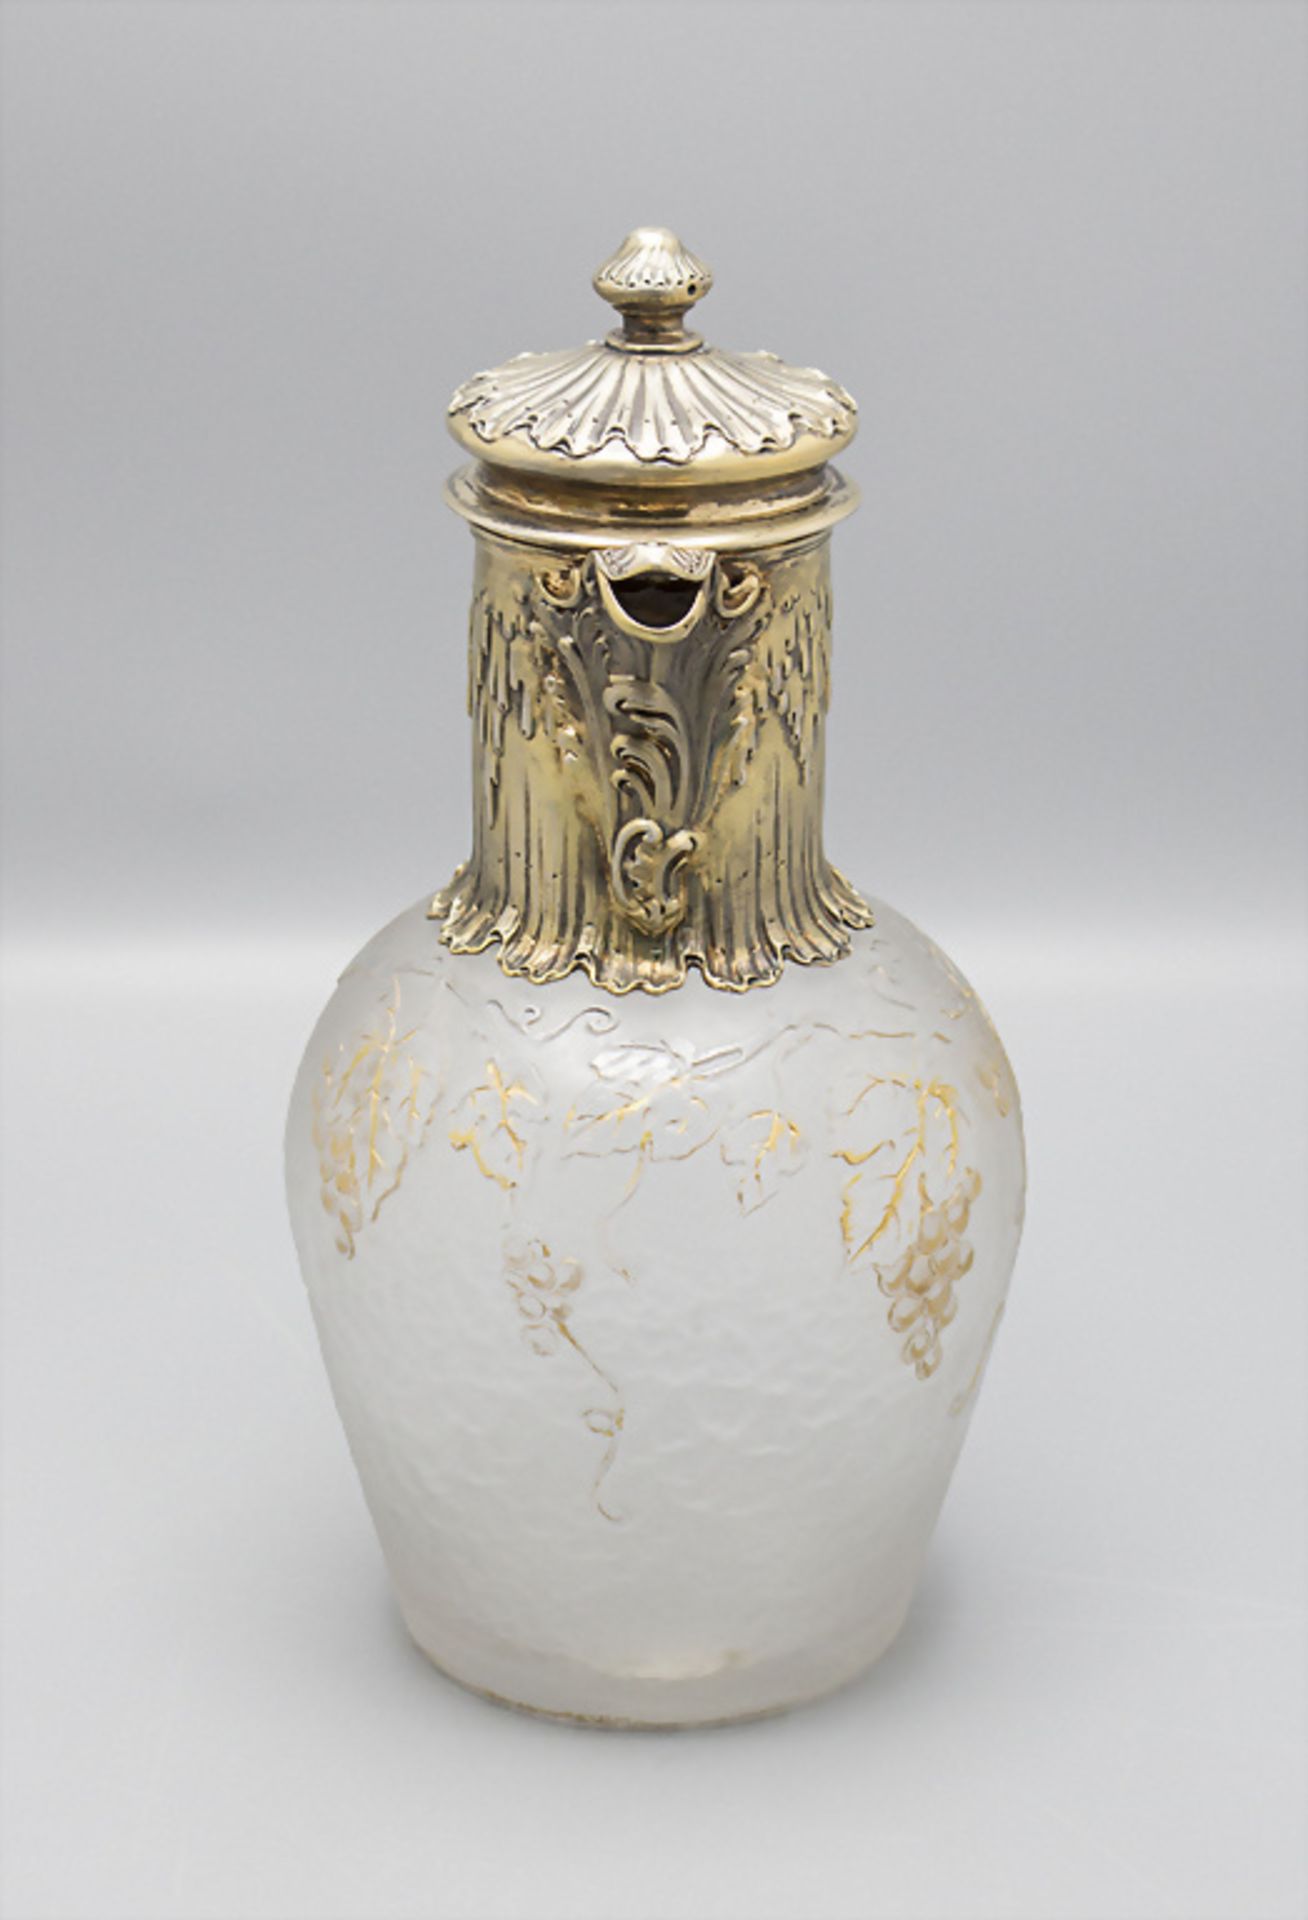 Jugendstil Schenkkrug mit Silbermontur / An Art Nouveau glass decanter with silver mount, wohl ... - Bild 2 aus 7